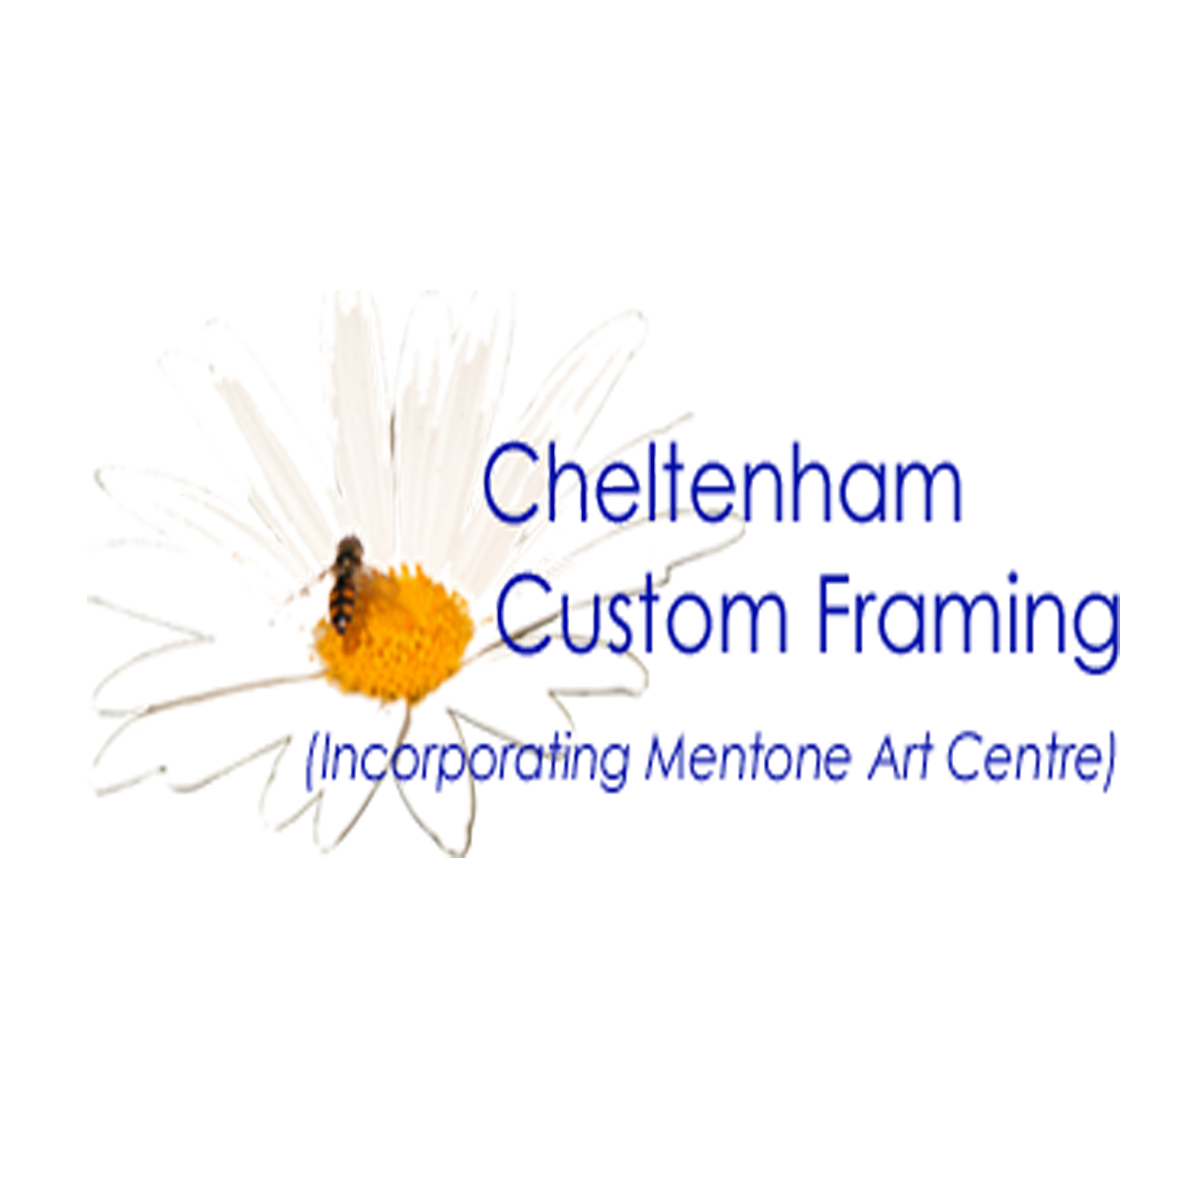 20160821083322-cheltenham-custom-framing-logo.png